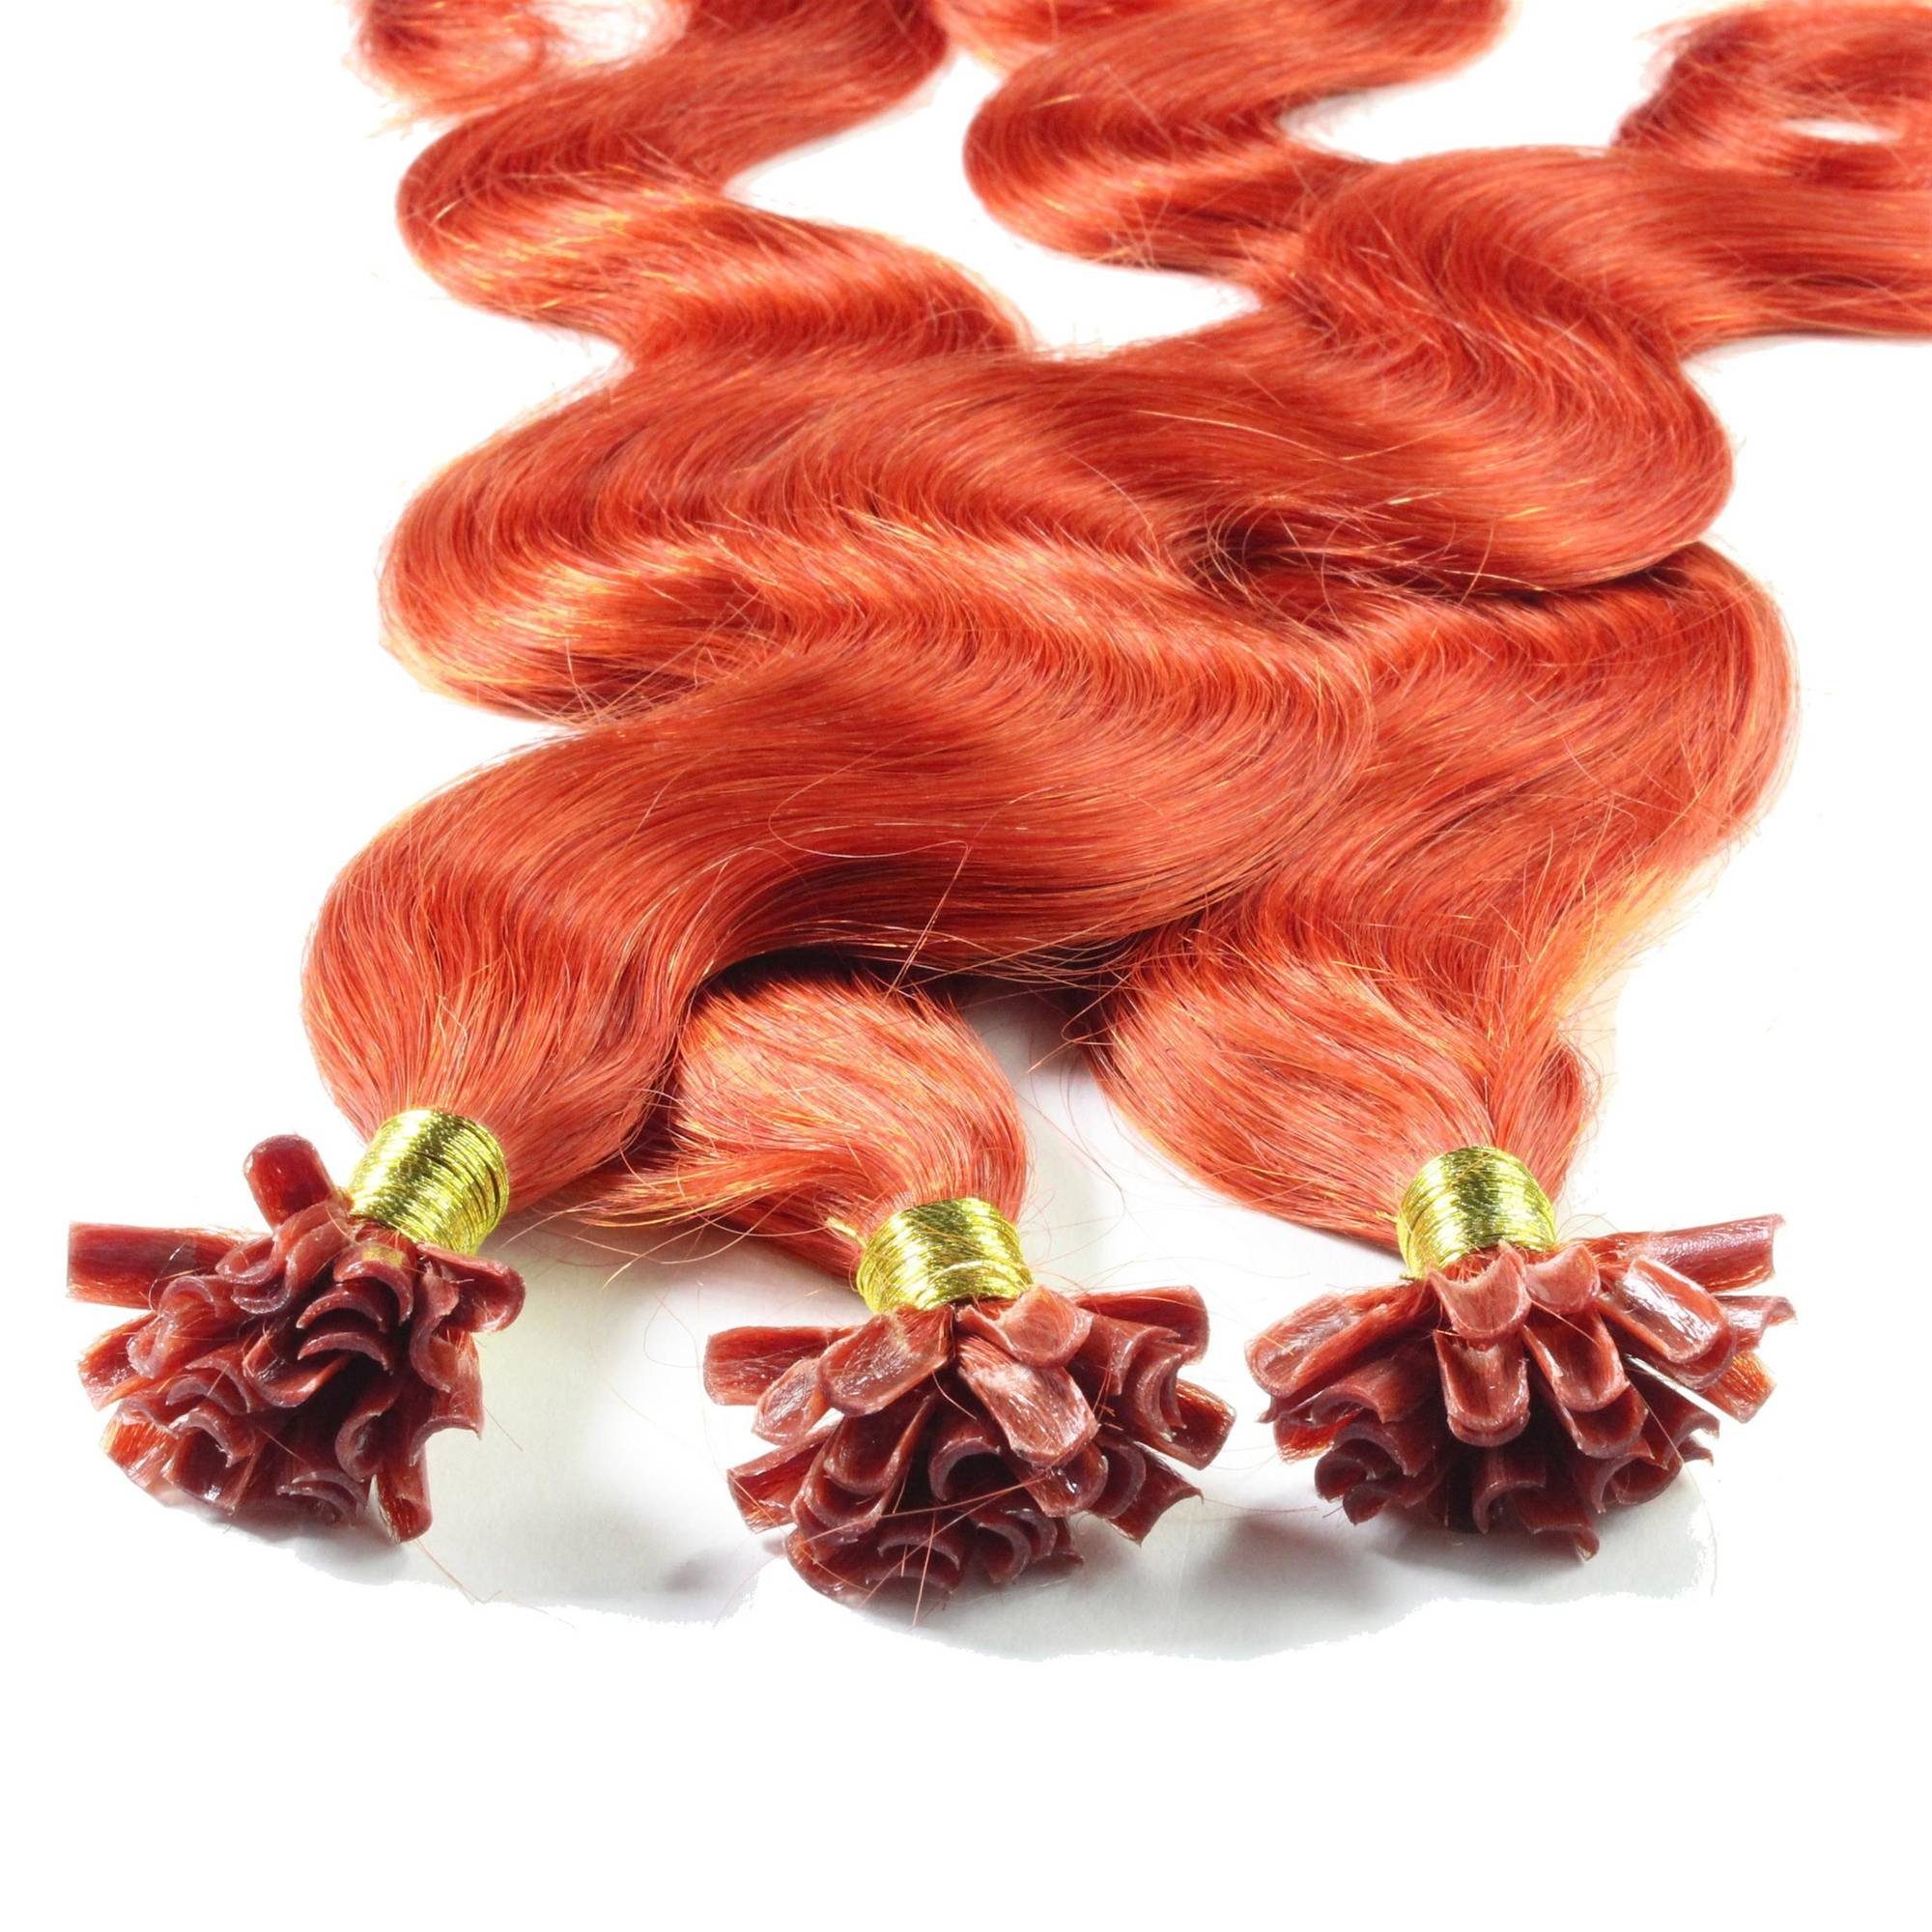 hair2heart Echthaar-Extension Bonding Extensions gewellt #8/43 Hellblond Rot-Gold 0.5g 40cm